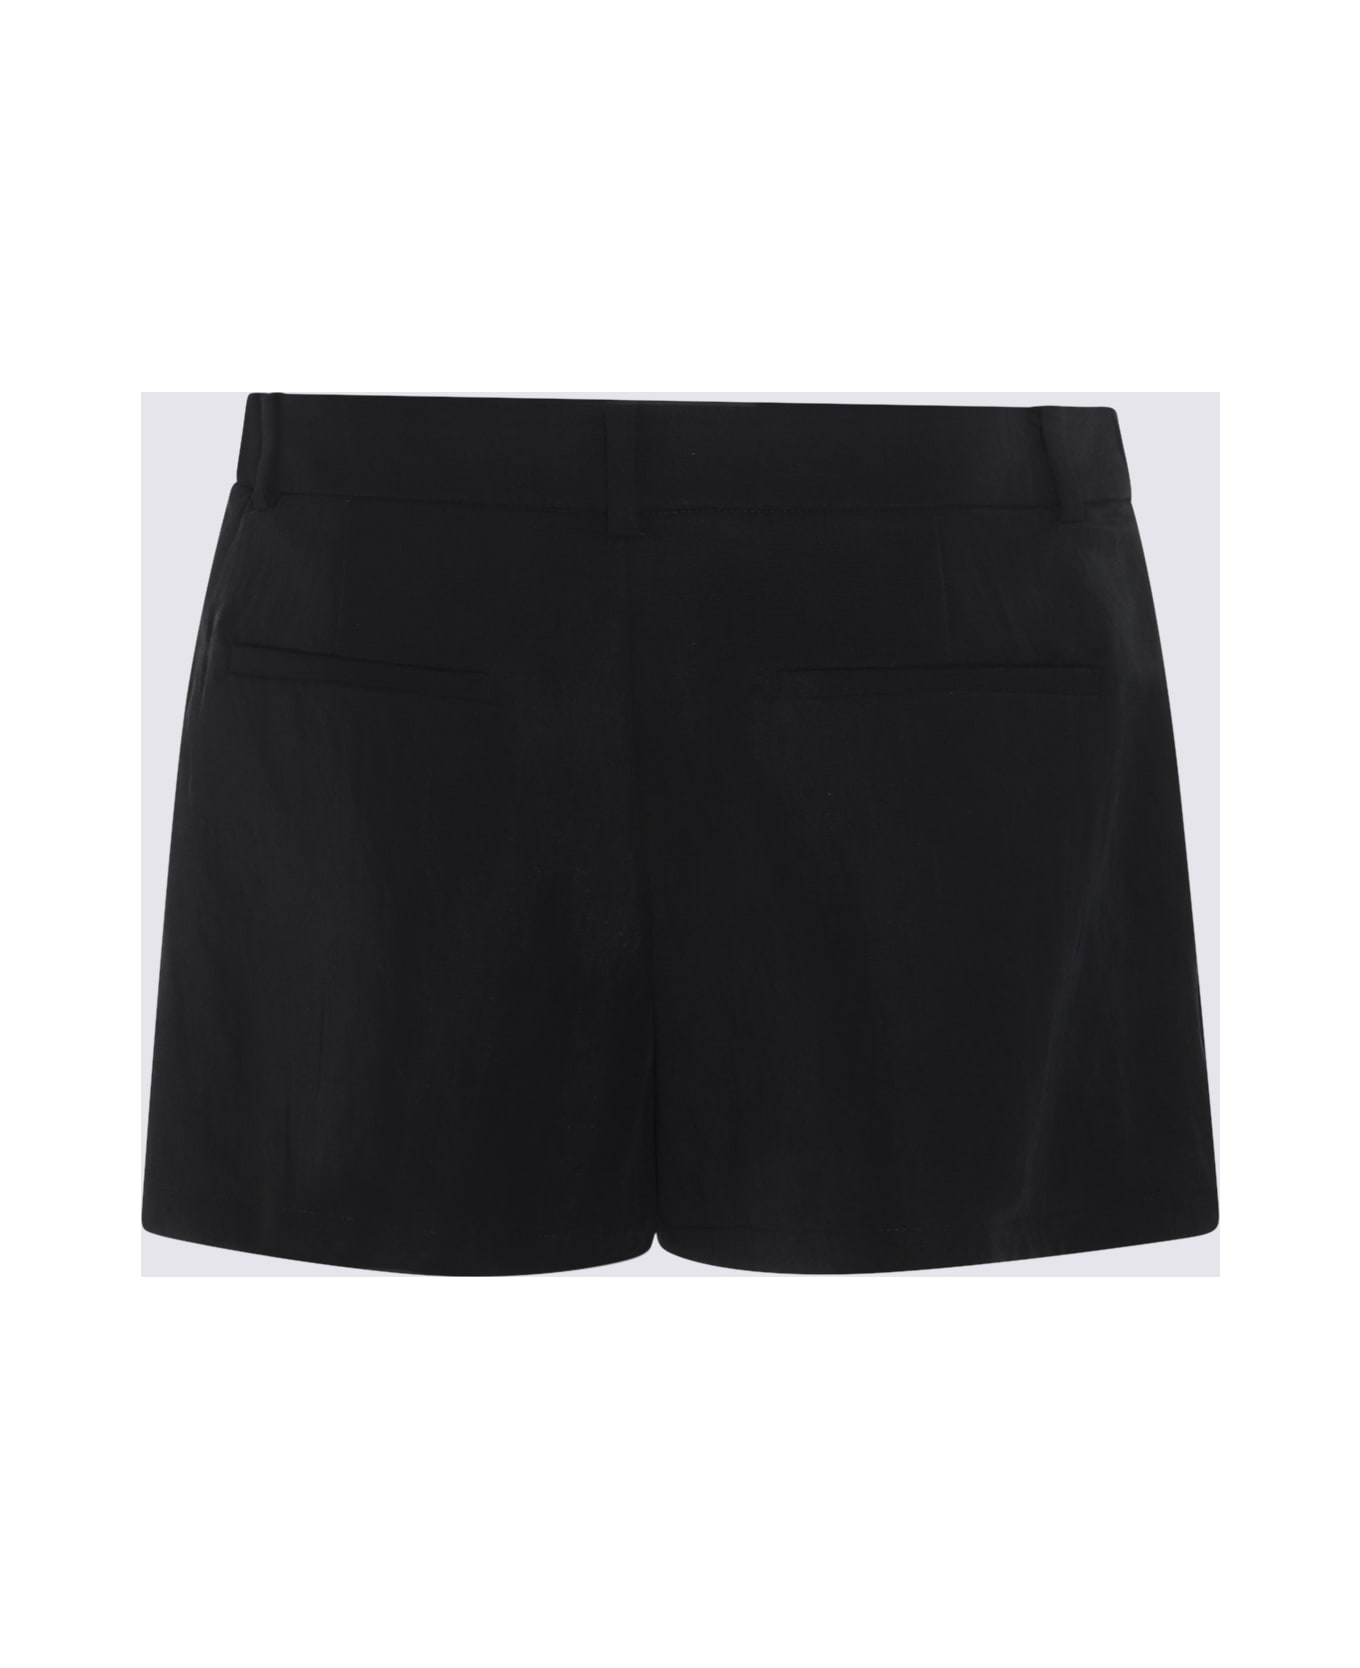 Blumarine Black Shorts - Black ショートパンツ